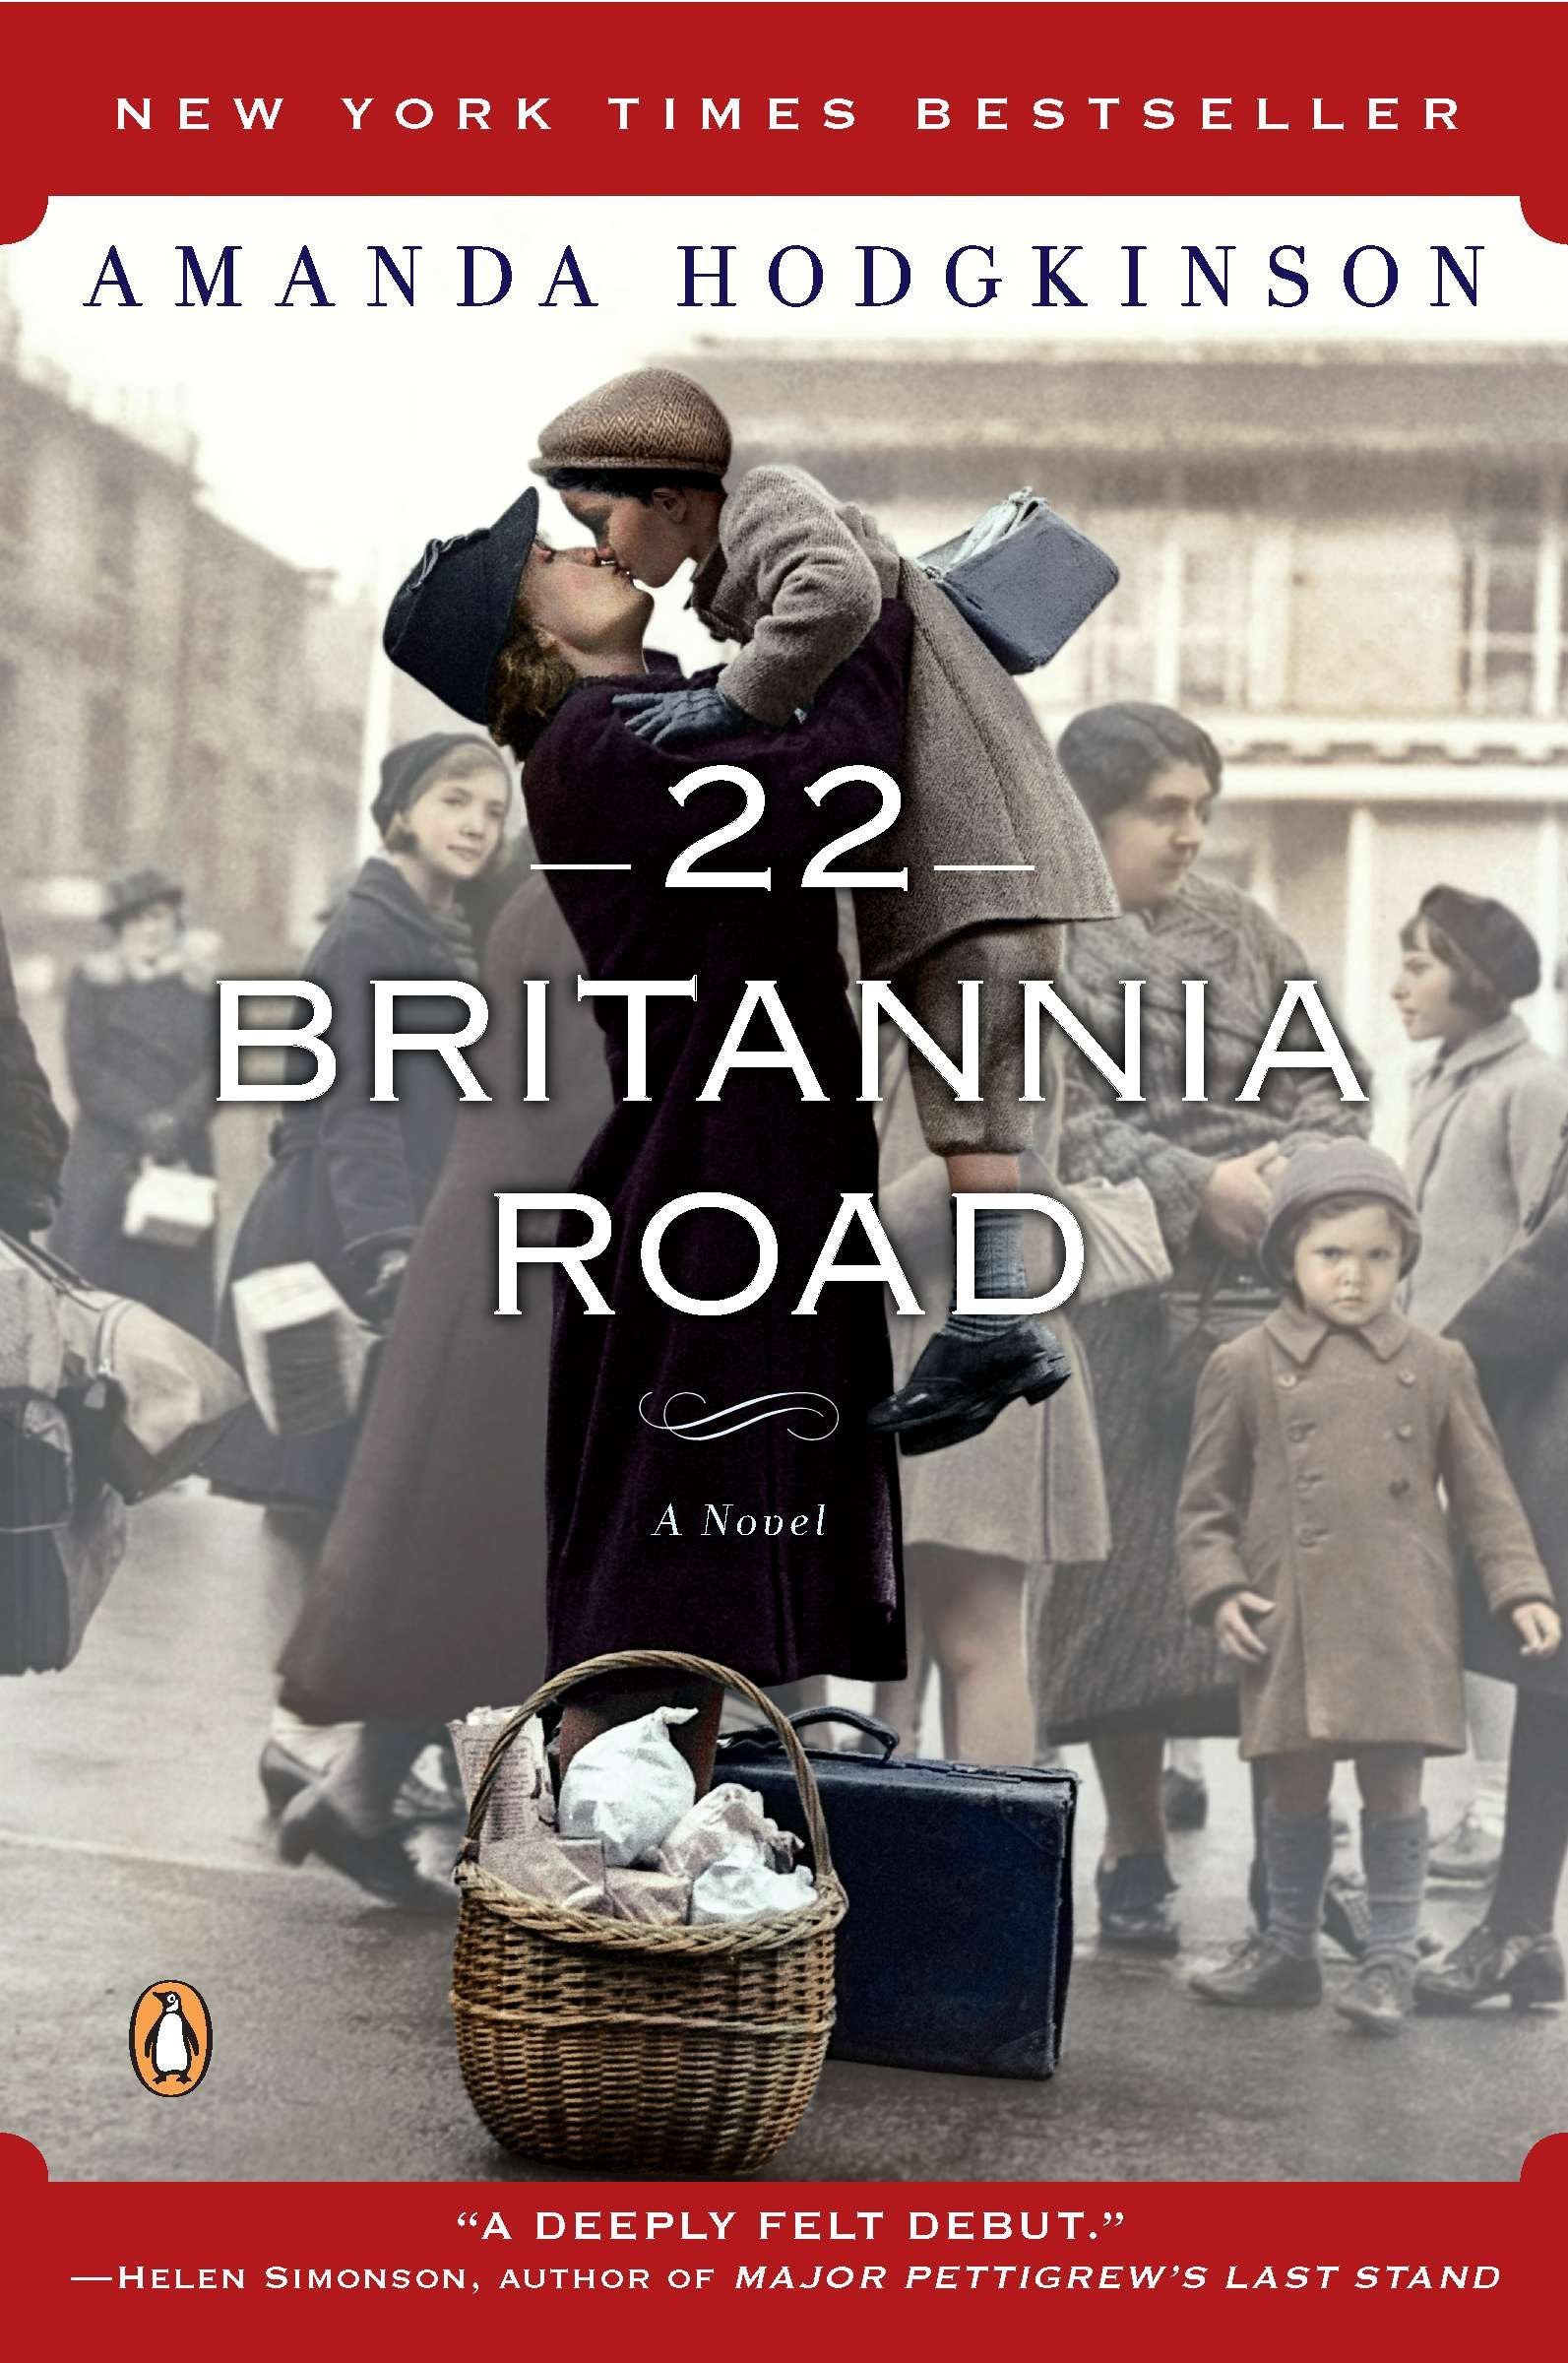 Image for "22 Britannia Road"